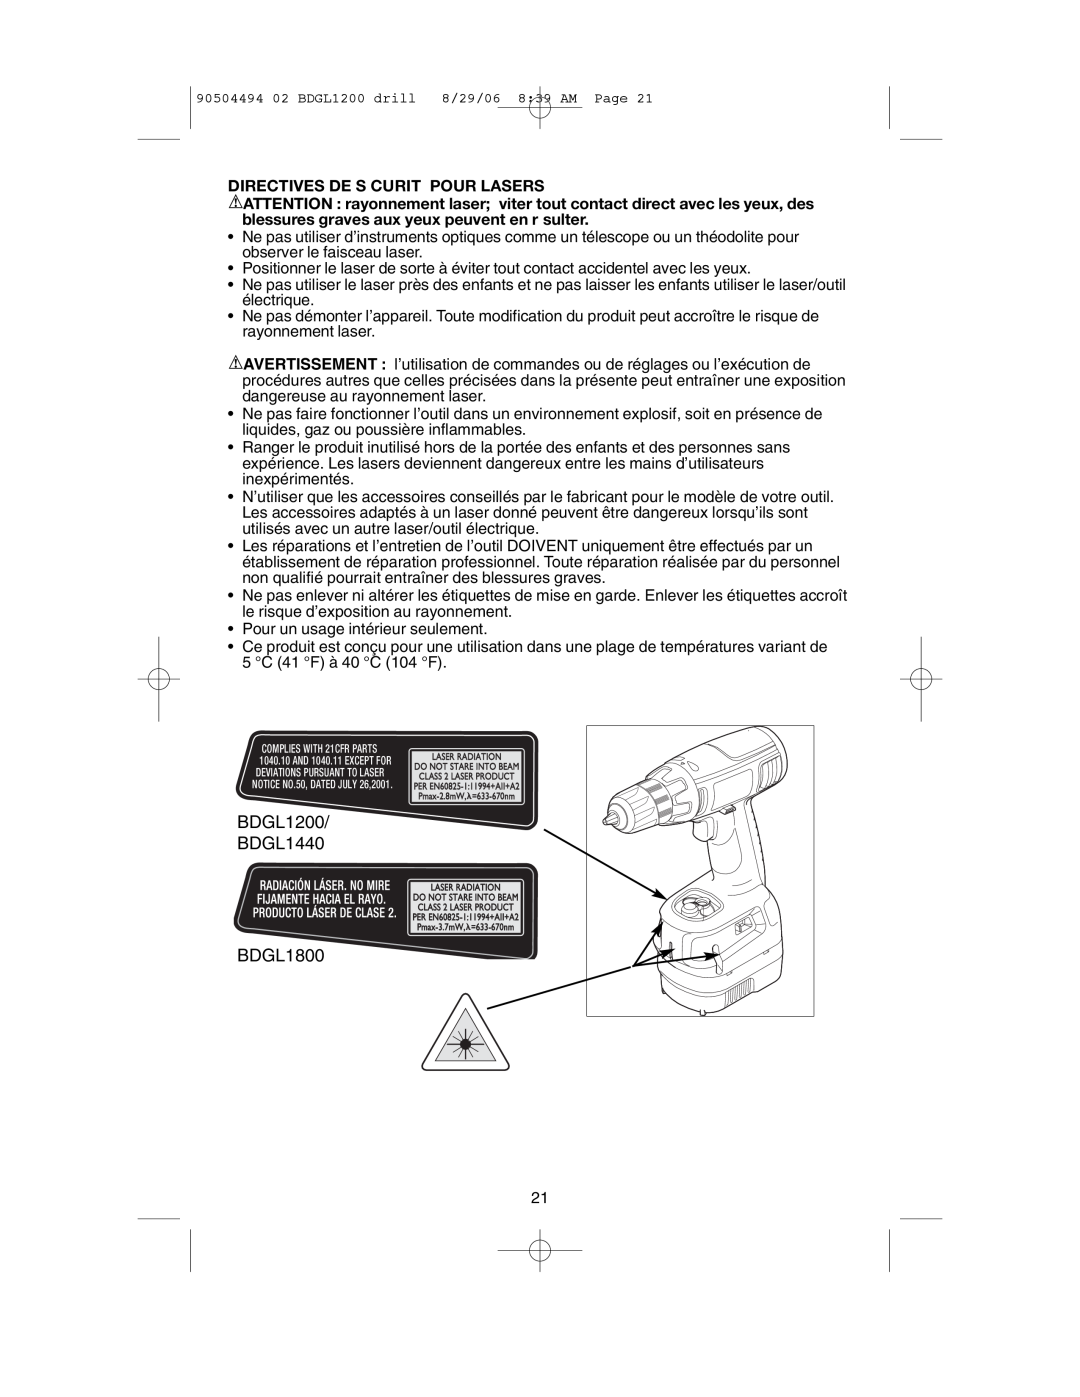 Black & Decker 90504494 instruction manual Directives De S Curit Pour Lasers, BDGL1200 BDGL1440, BDGL1800 